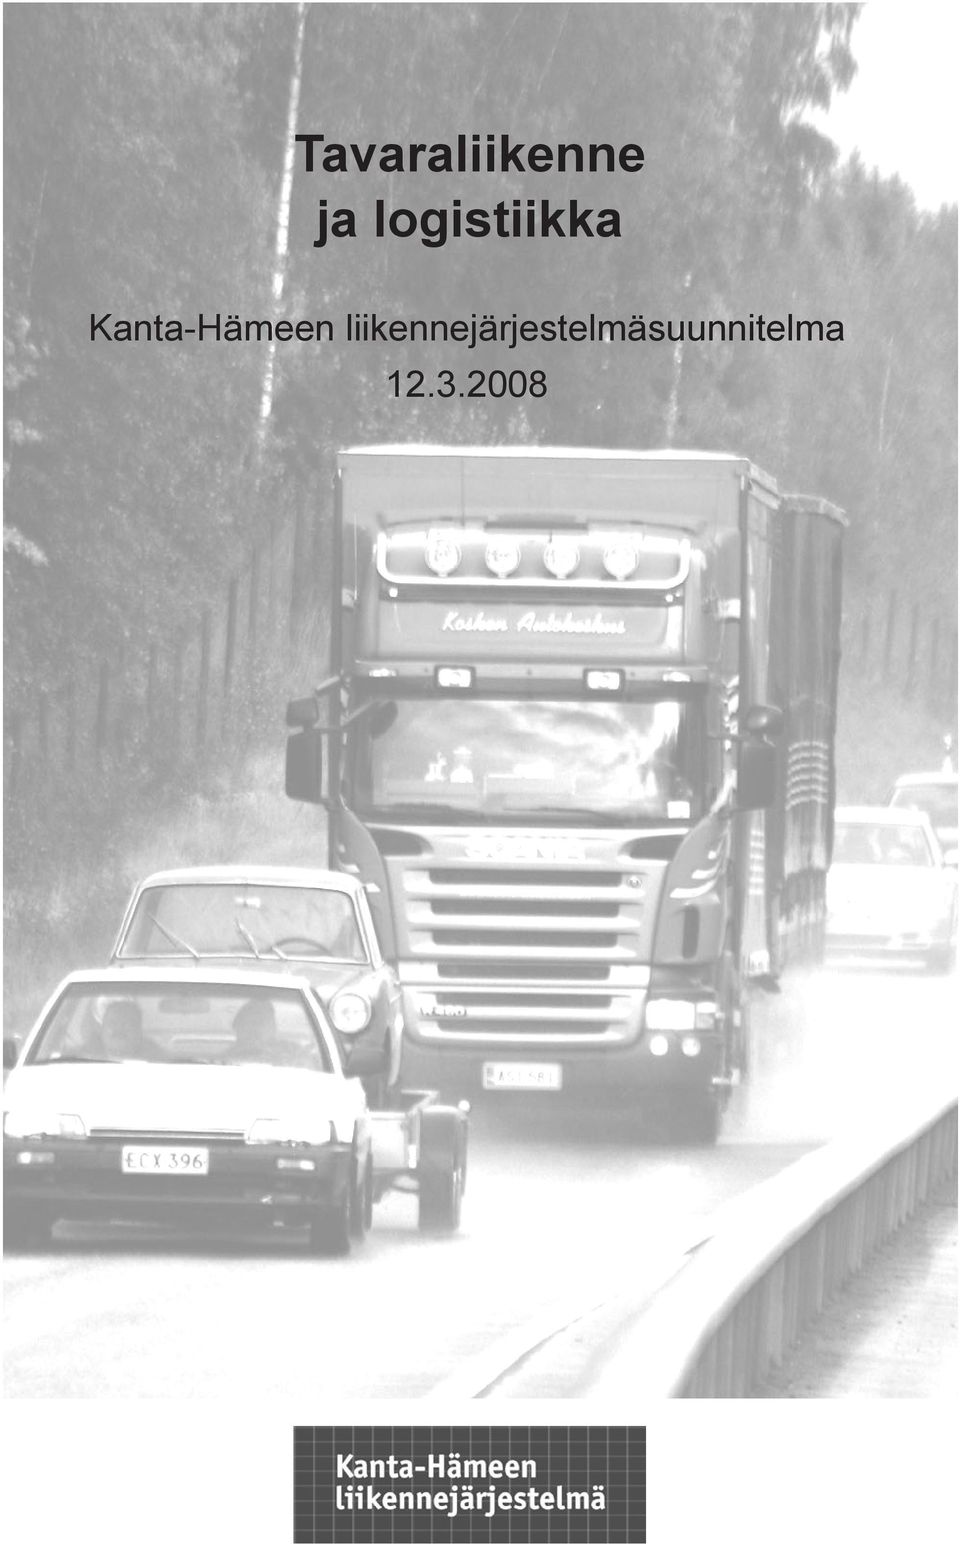 Kanta-Hämeen